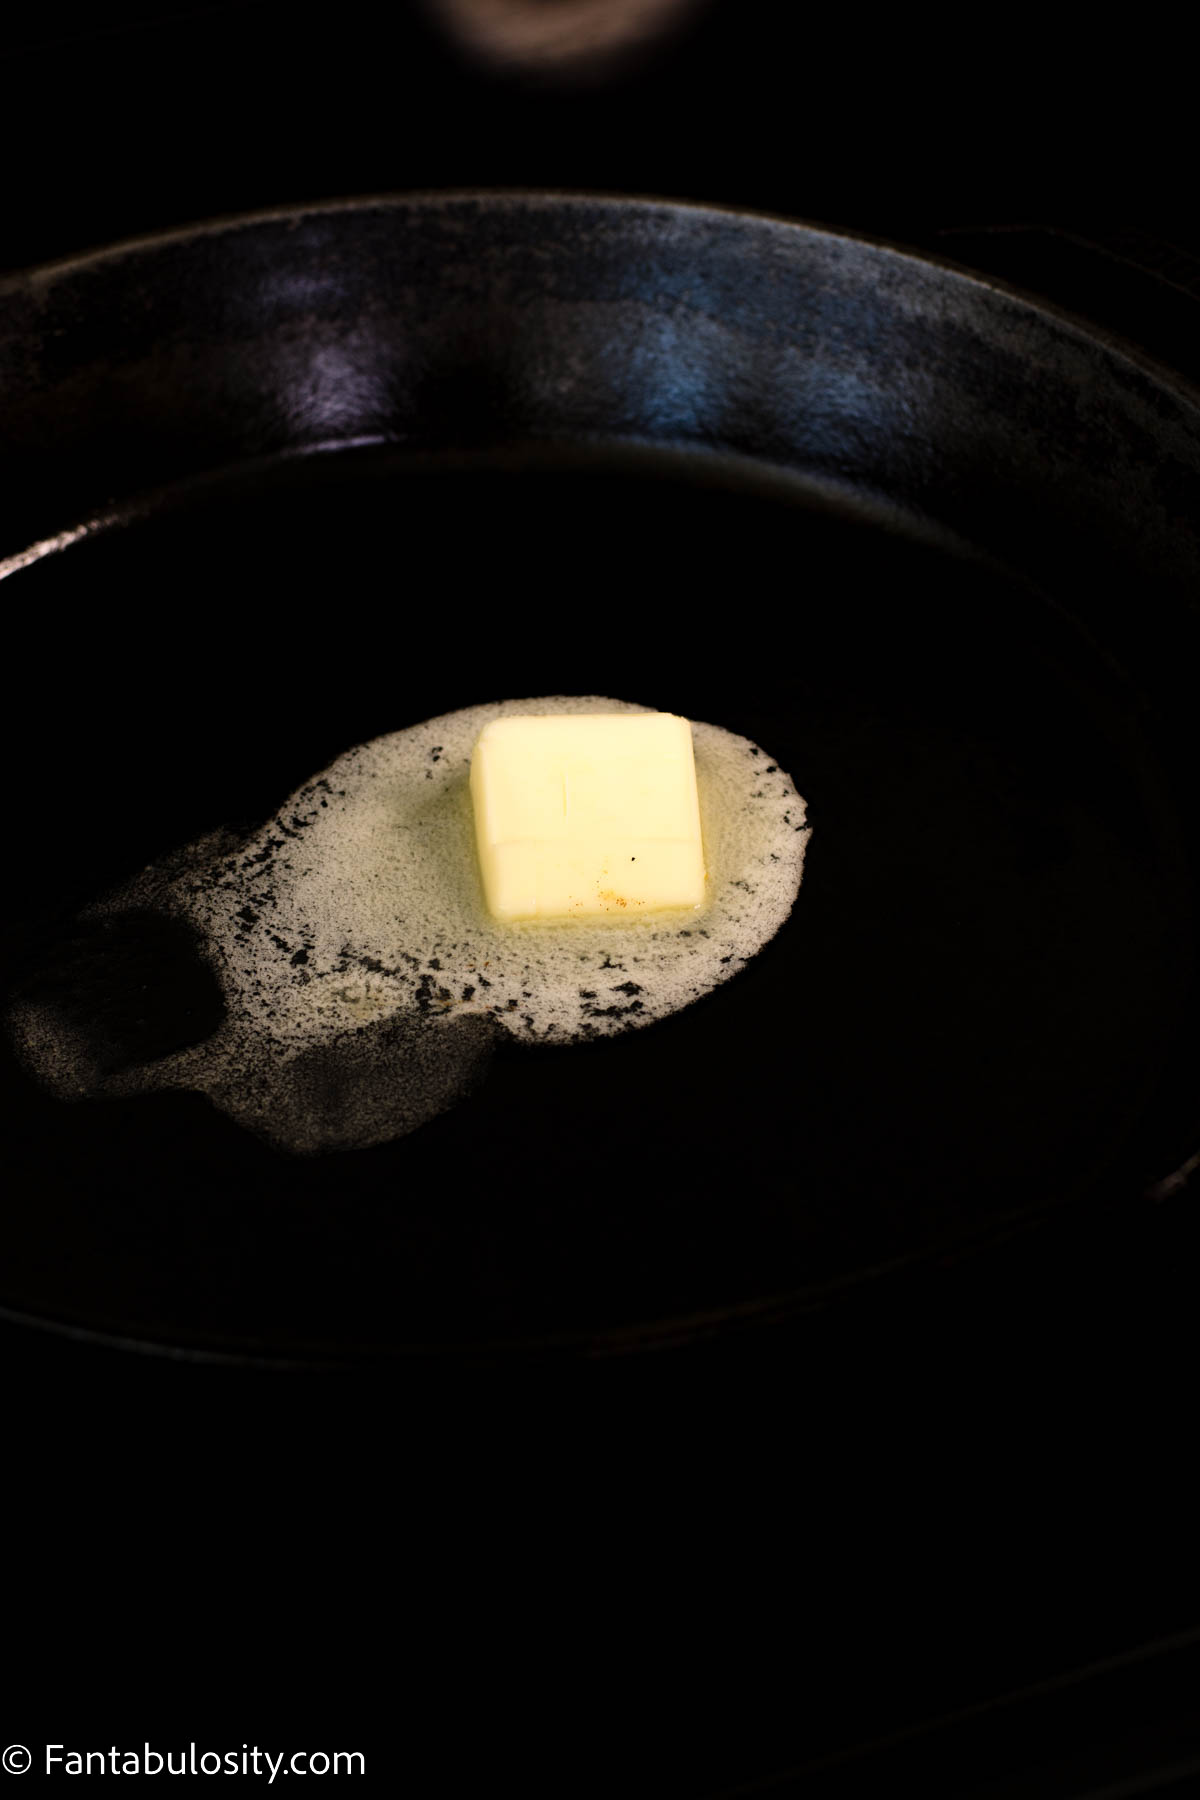 butter melting in hot skillet